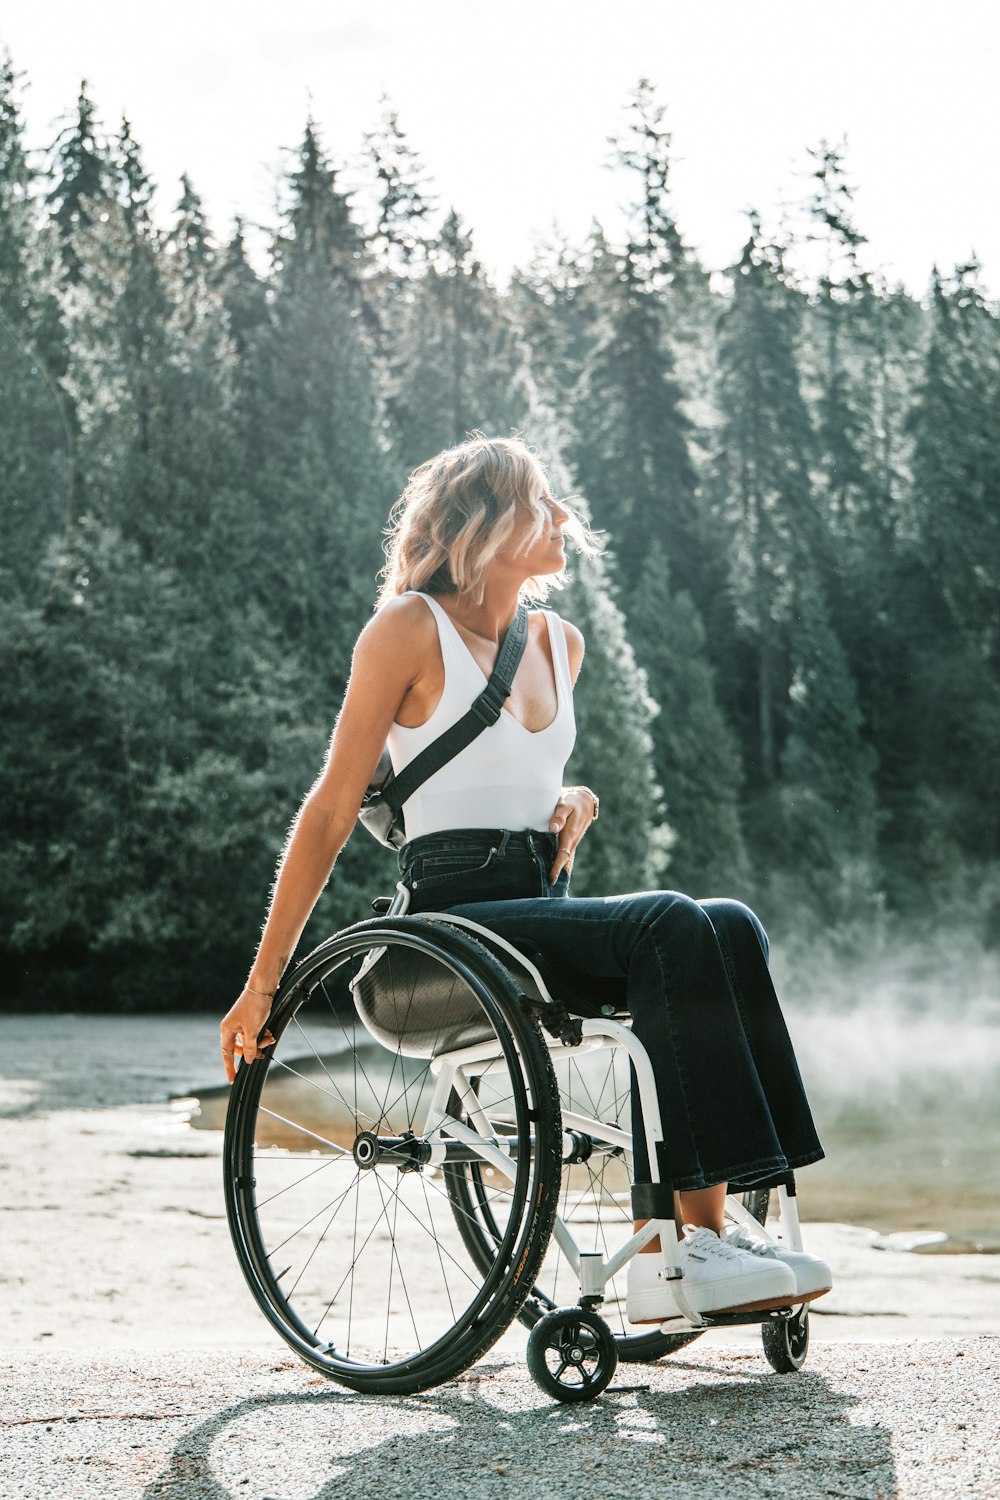 Frau fährt Rollstuhl in der Nähe von Bäumen